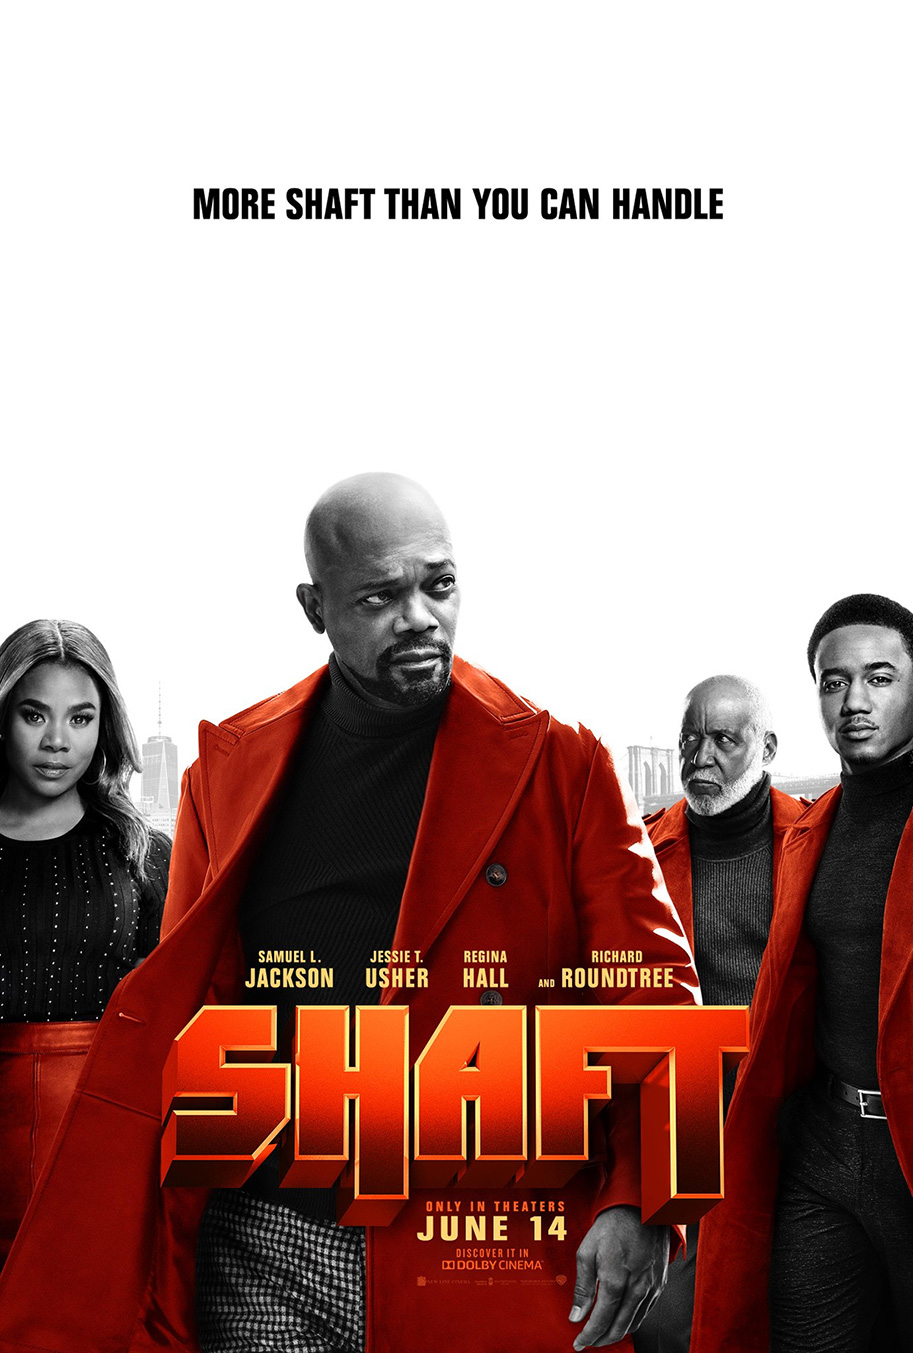 Shaft, Samuel L. Jackson, red band trailer